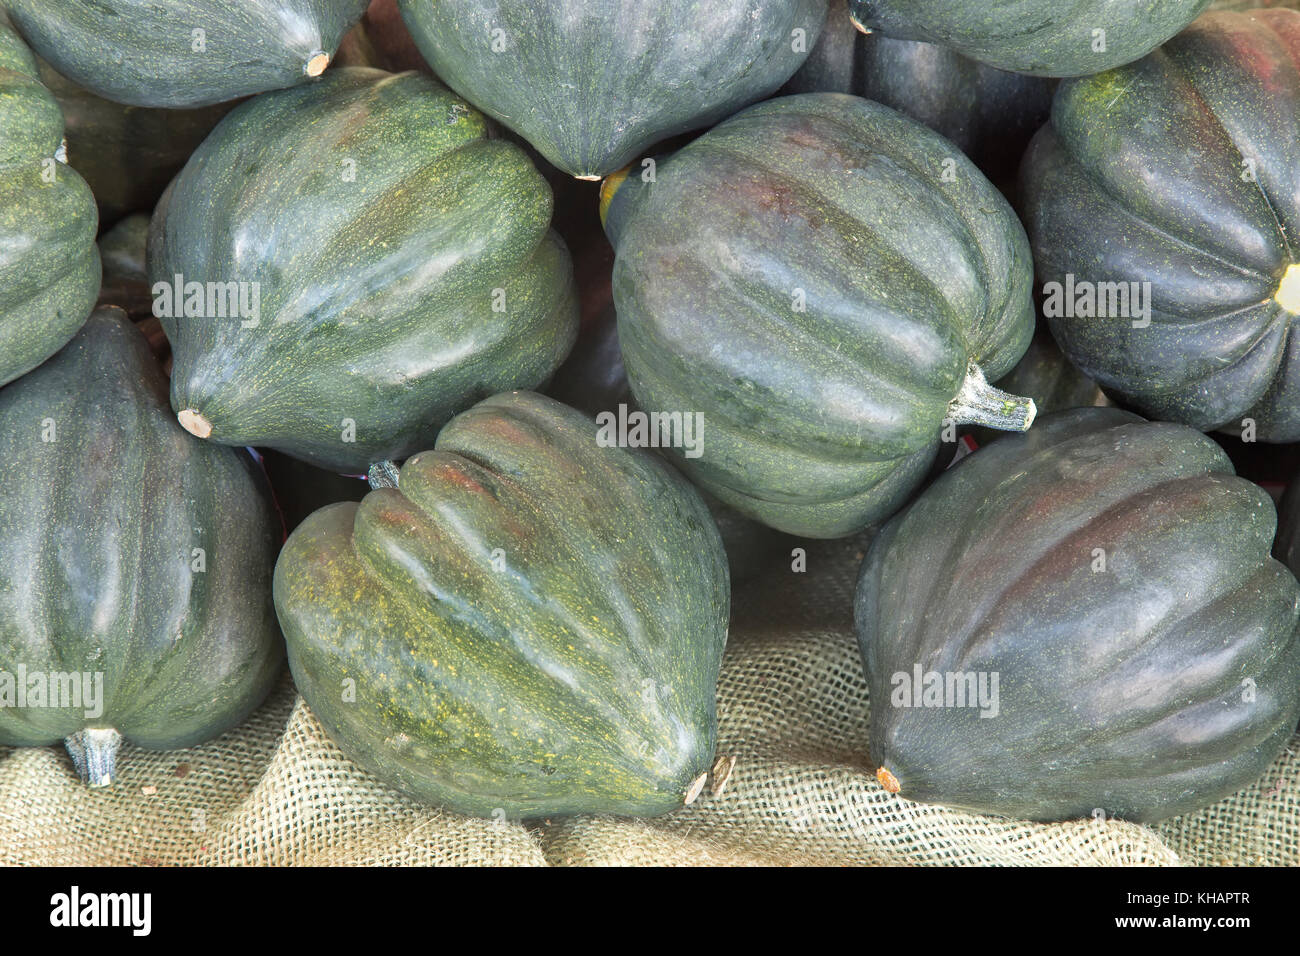 Green Acorn 'Cucurbita pepo' squash harvest,  variety turbinate, organic . Stock Photo